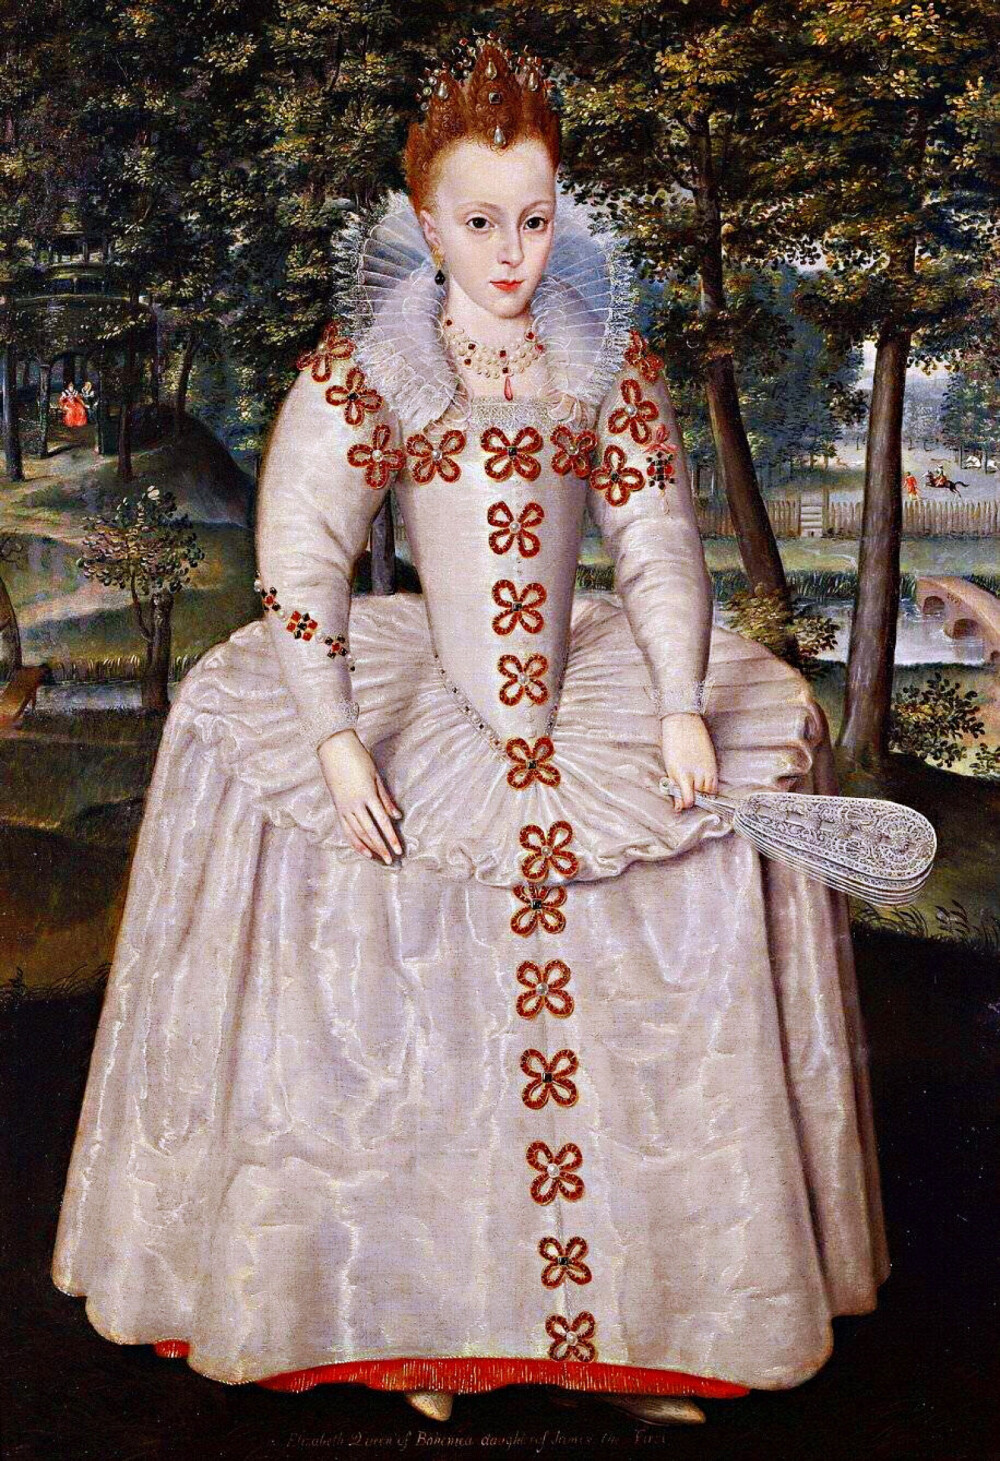 伊丽莎白·斯图亚特（1596~1662，英王詹姆斯一世之女，帕拉丁选帝侯夫人，短暂地当过波西米亚王后）一生经历的时尚变迁，从少女时的文艺复兴末期英国流行的拉夫领和轮状裙撑配高发髻，到之后的大片蕾丝领子、高腰裙与裂口泡泡袖配蘑菇头，再之后的巴洛克款大圆领和蓬松袖子配垂落发卷，整个人的造型发生天翻地覆的变化。